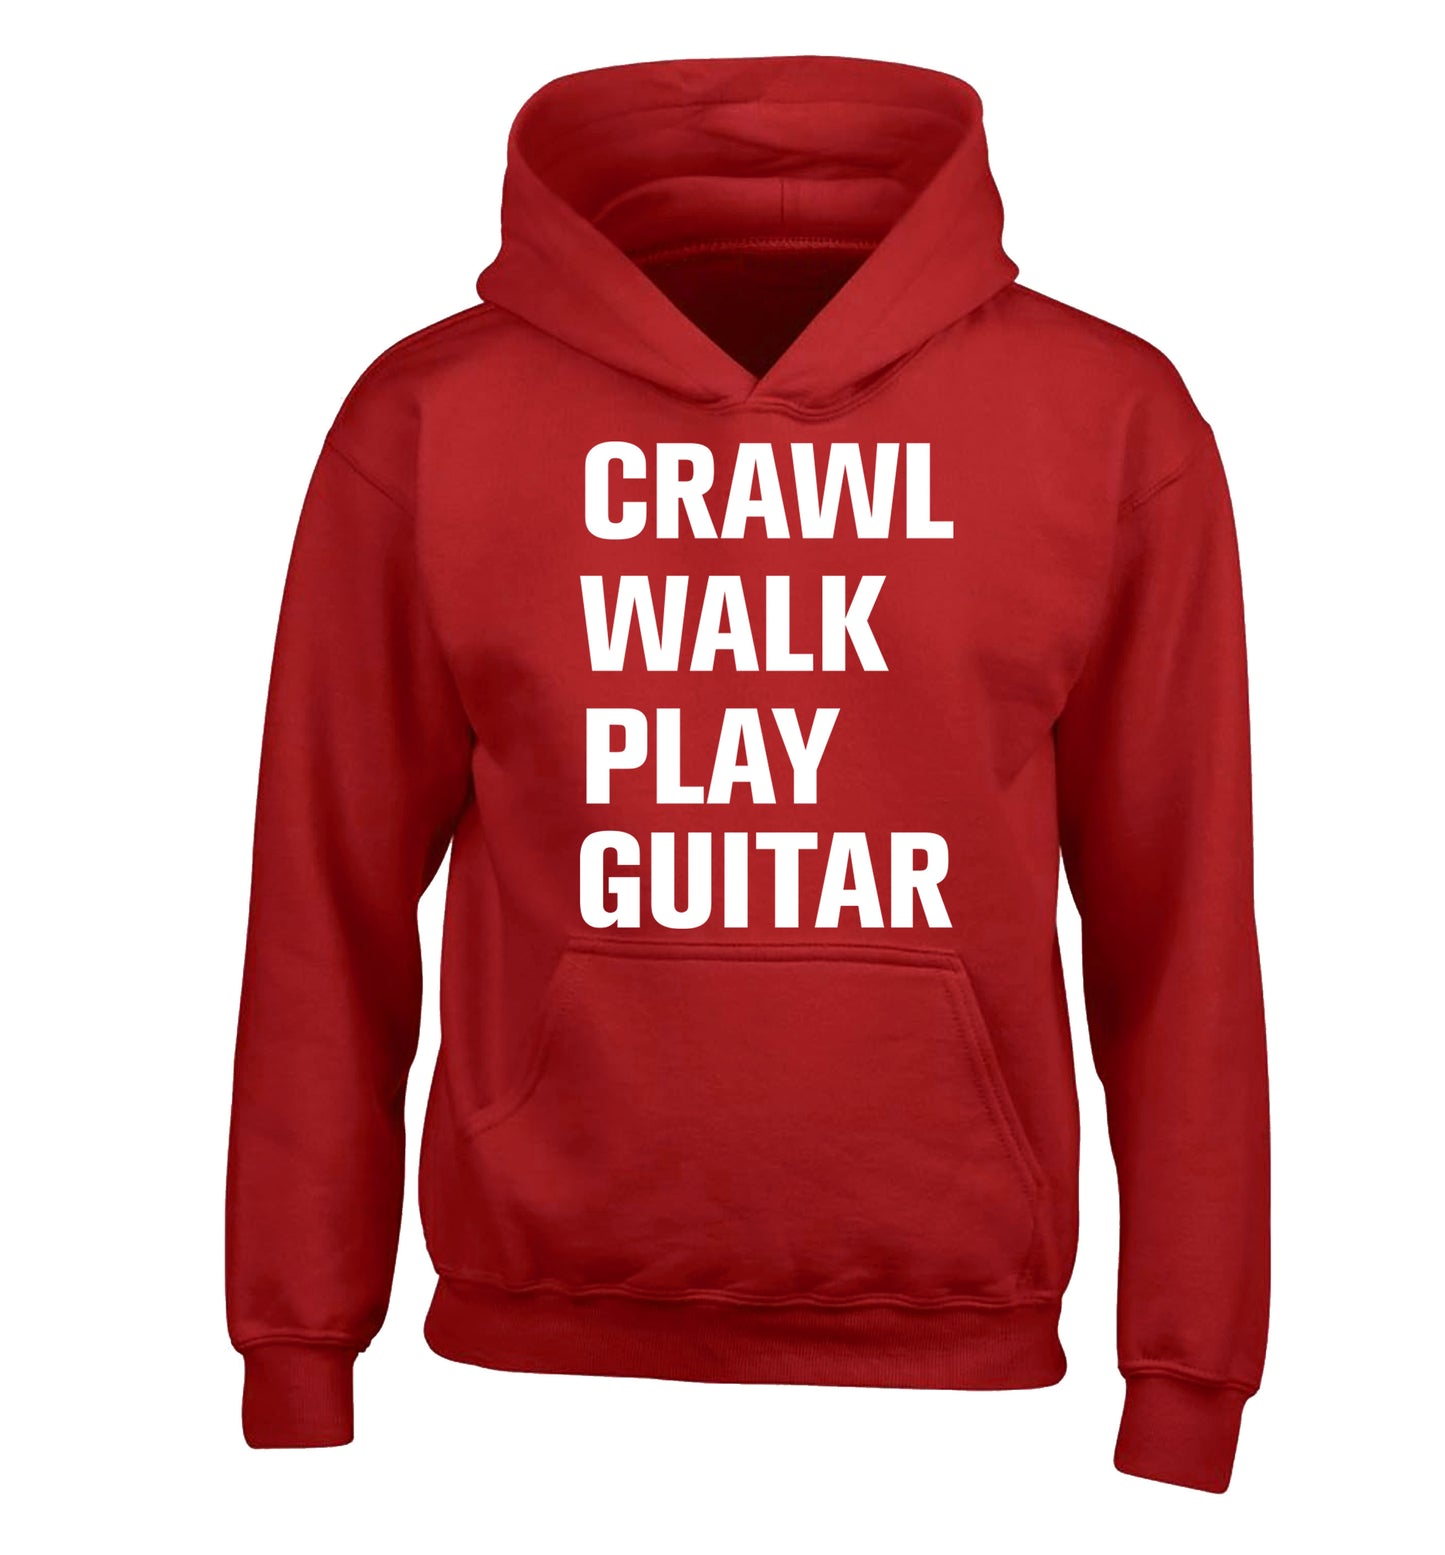 Crawl walk play guitar children's red hoodie 12-13 Years